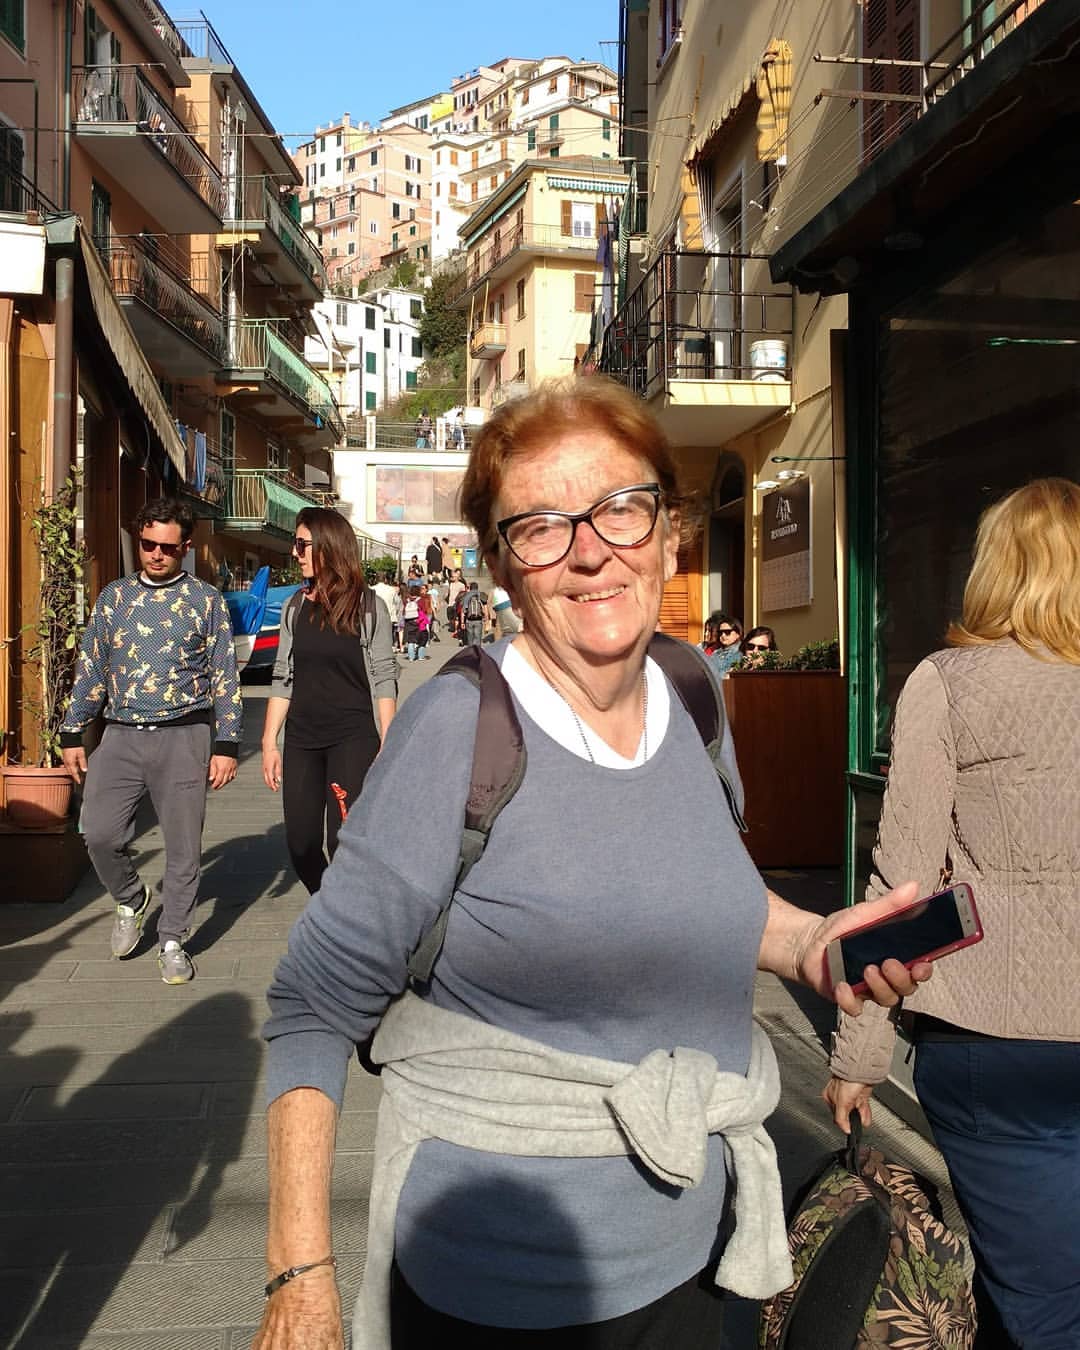 A pura sonrisa en Cinque Terre, Italia. "Me siento muy bien ayudando, y pertenecí a instituciones con este fin, visitando a personas internadas en el servicio de pediatría para llevar en unos segundos de buena onda, una sonrisa, una oración, o lo que surja del encuentro; cada visita da luz a mi espíritu", dice Elva, la abuela viajera